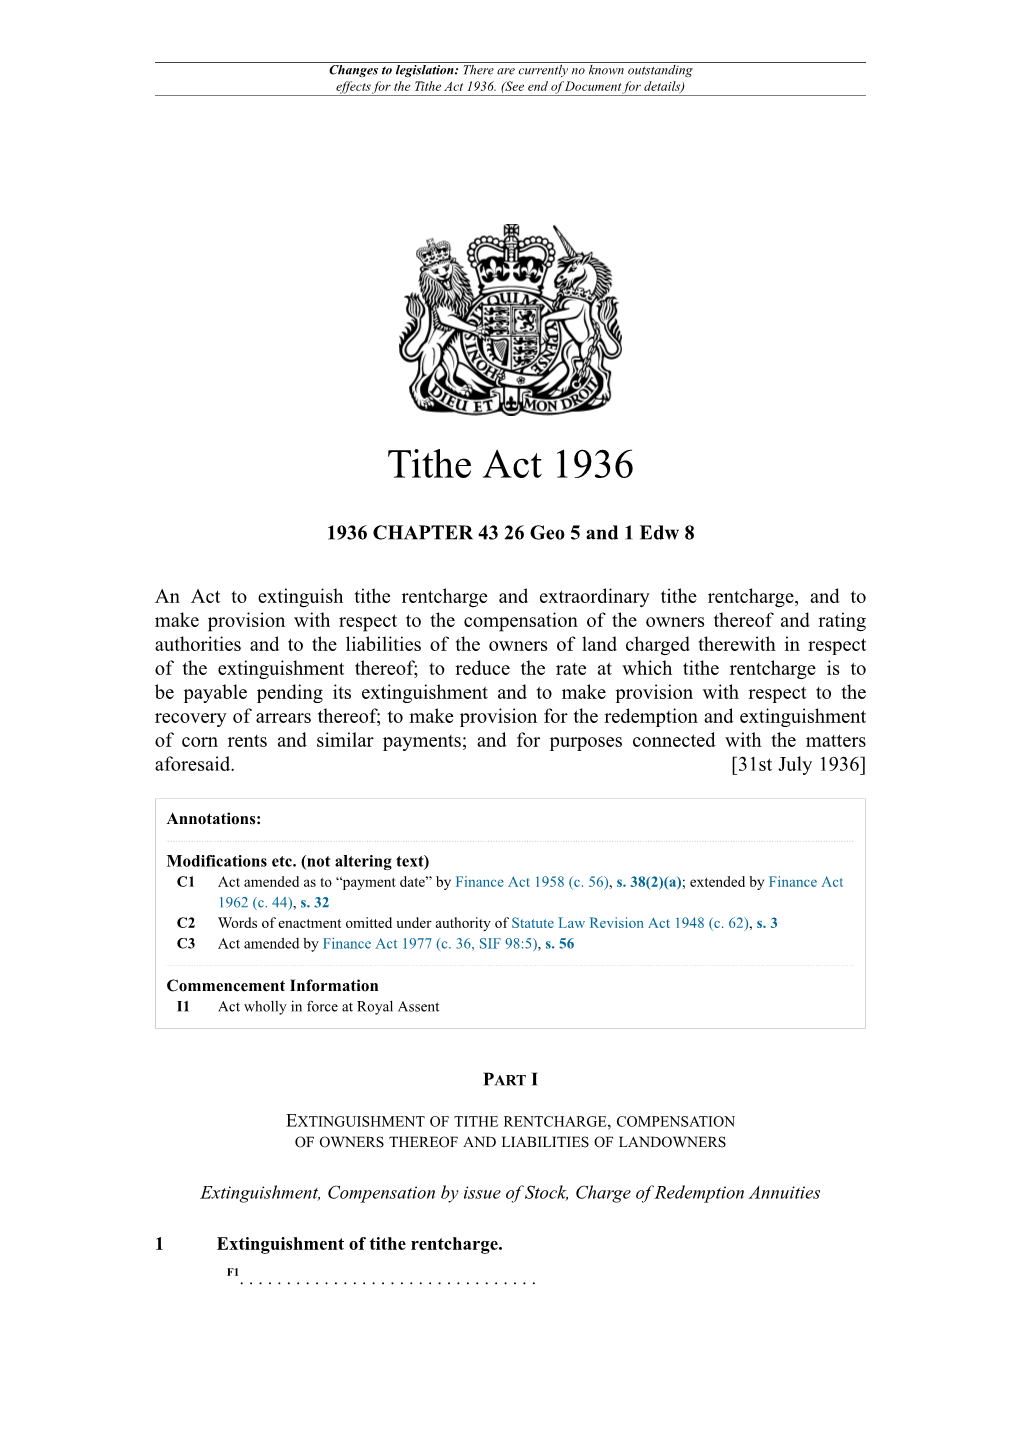 Tithe Act 1936